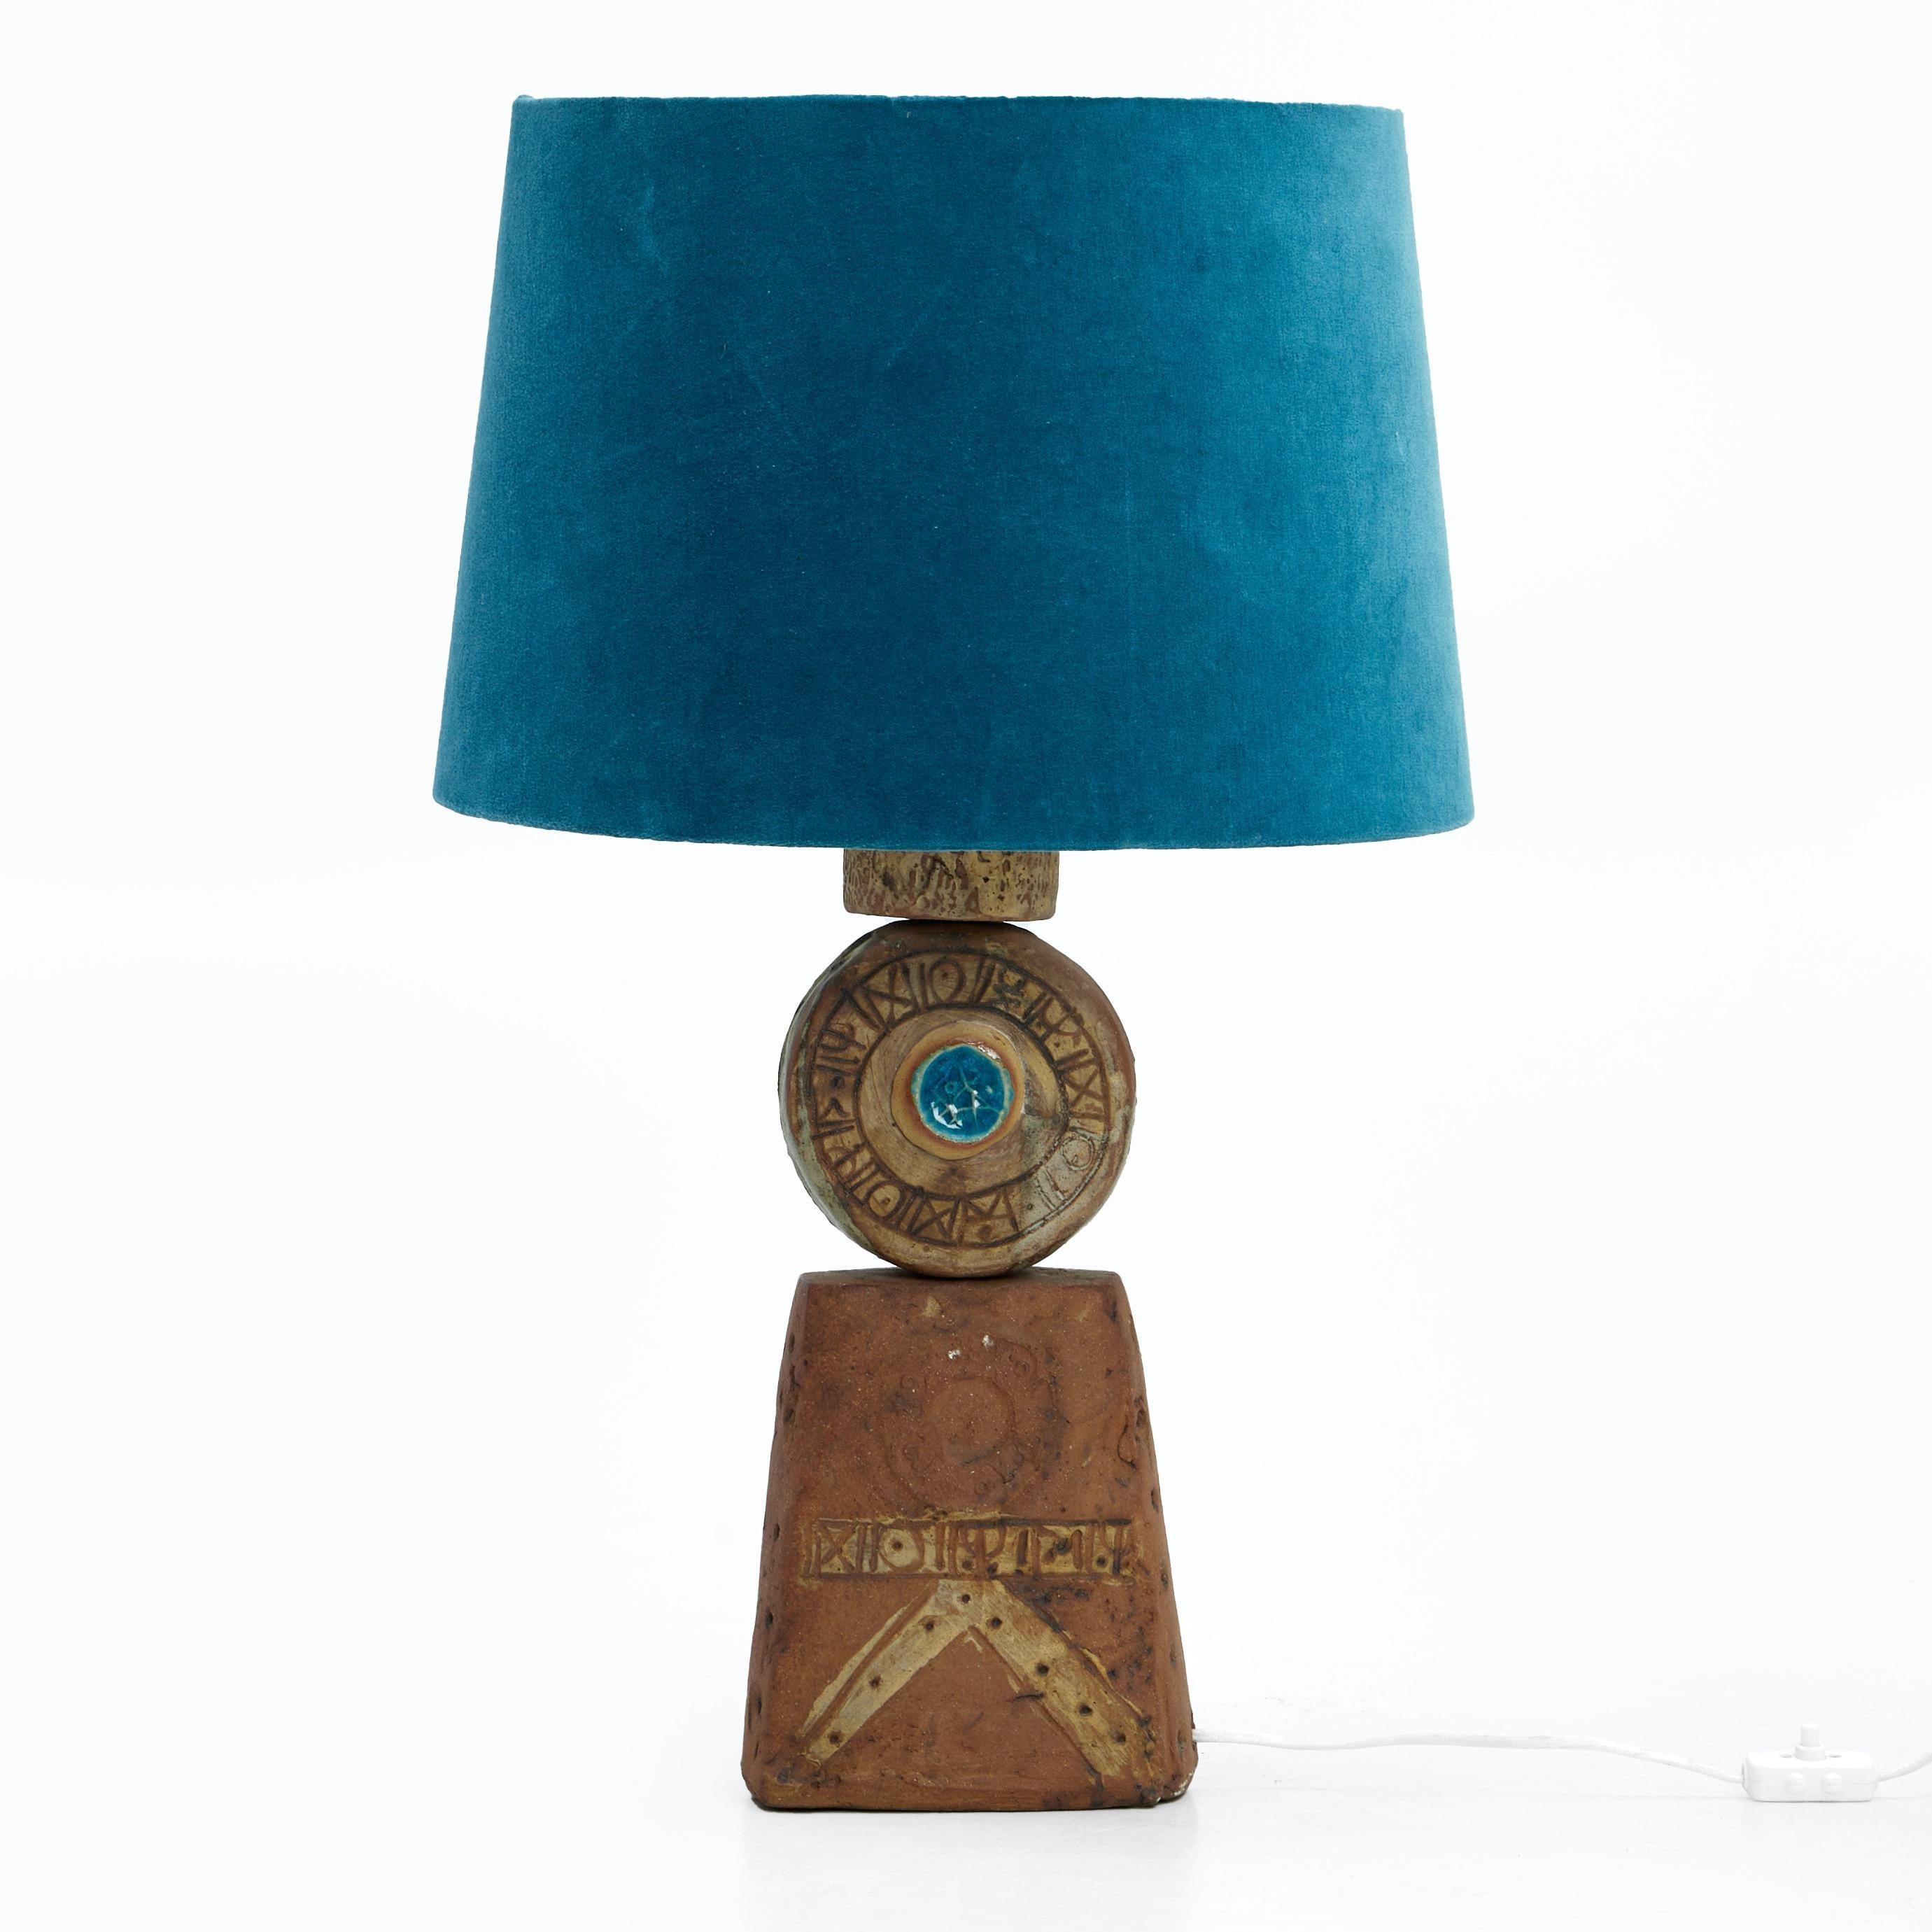 Brutalist Bernard Rooke, Totem Table Lamp. For Sale